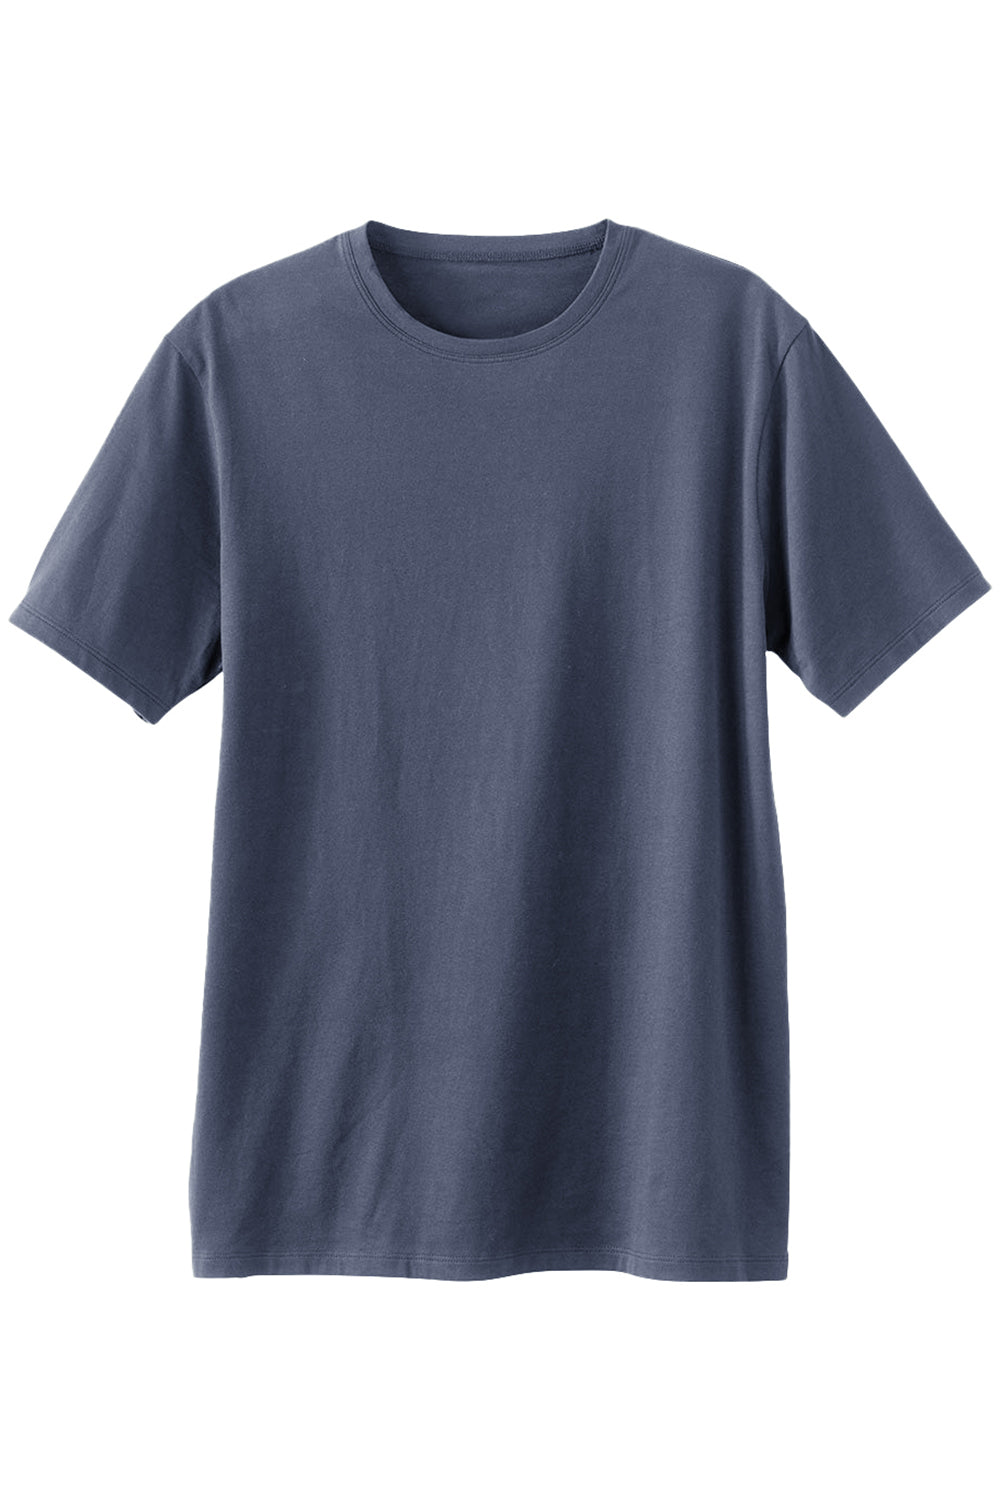 Men's 100% Cotton Crew Neck T-Shirt